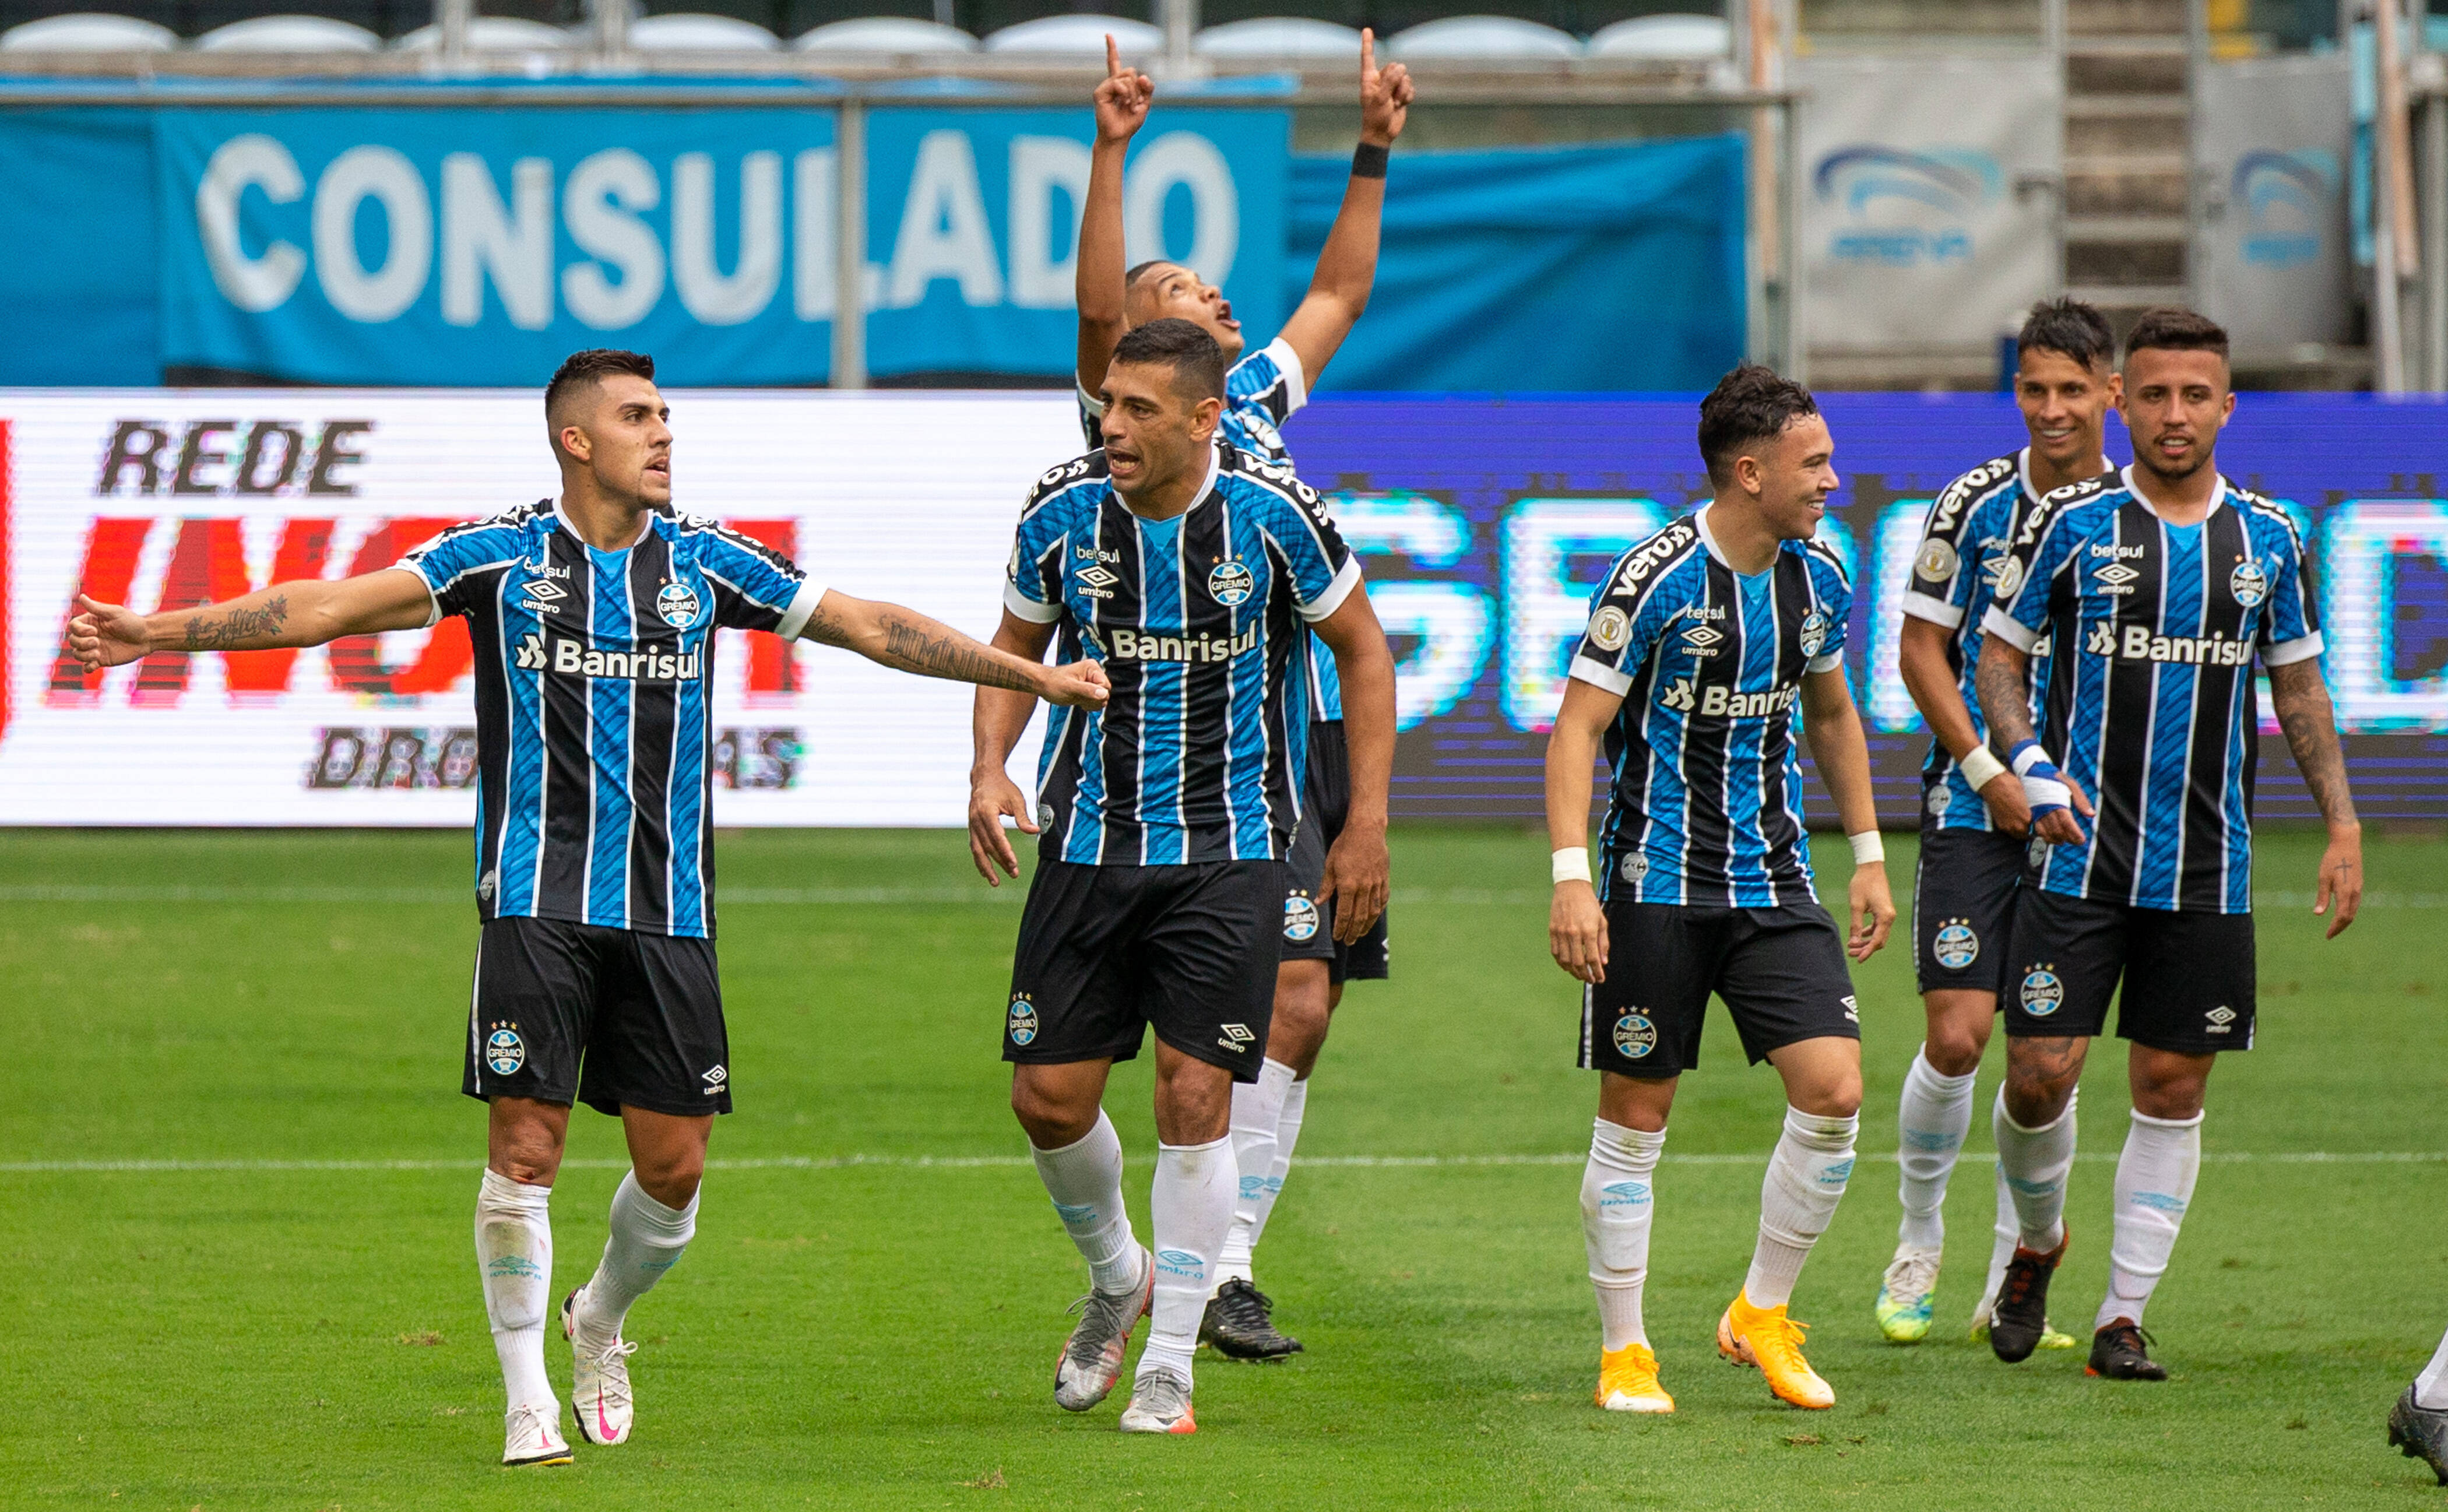 Grêmio X Vasco Da Gama Porto Alegre, Rs 06.12.2020: GrÊmio X Vasco Da Gama Cesar Pinares Celebrates Goal During The